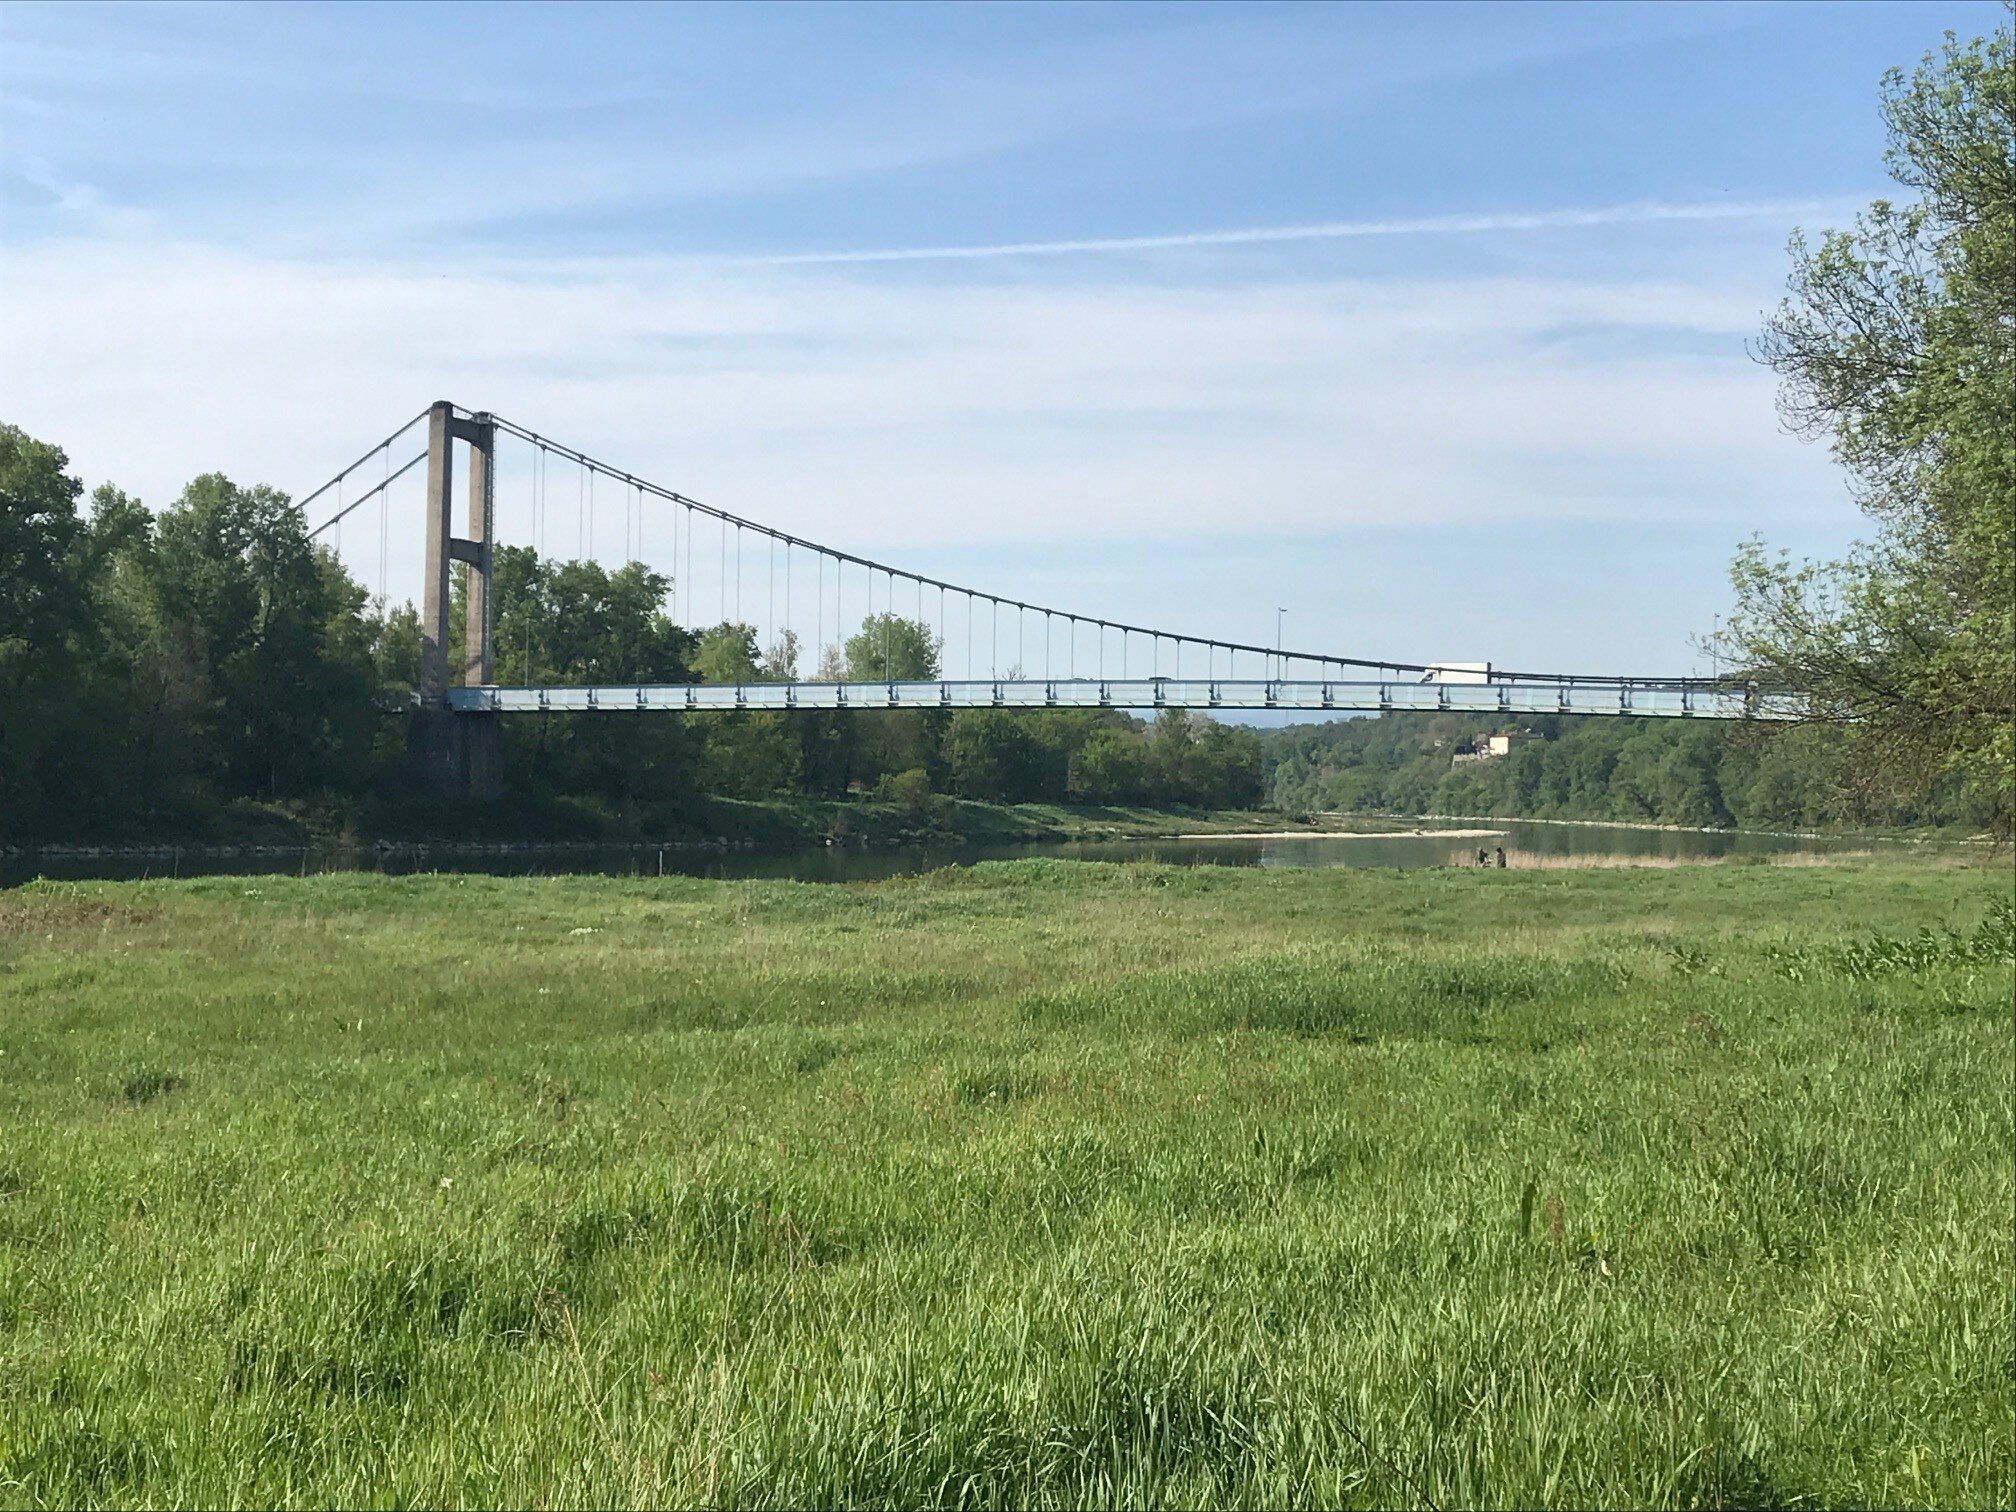 Sud de Lyon : quel avenir pour le vieux pont de Vernaison ?